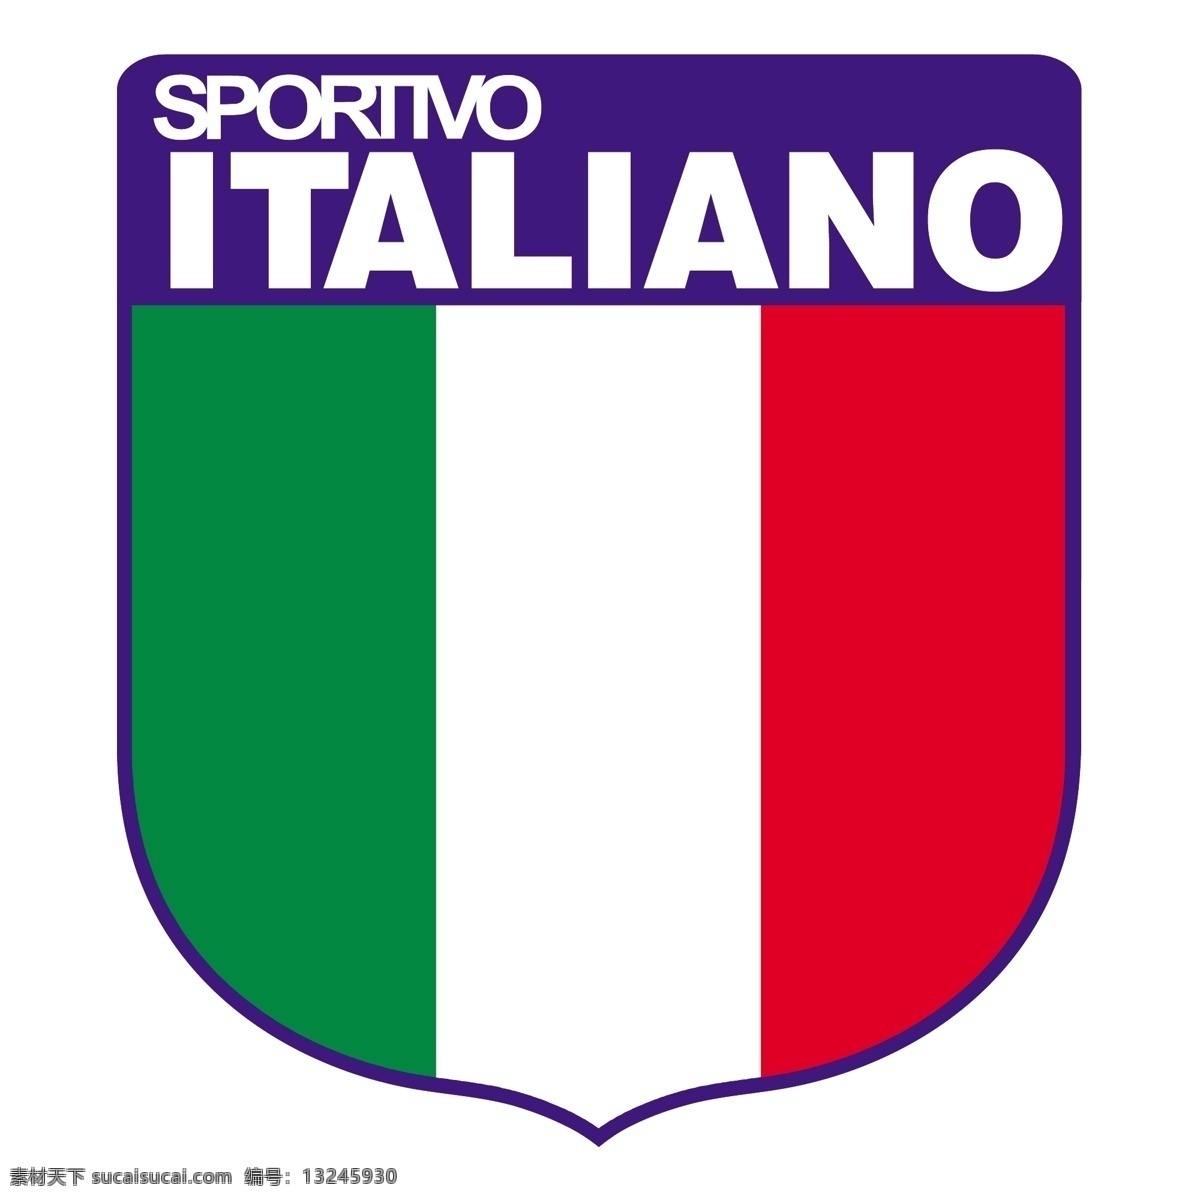 意大利队0 拉科鲁尼亚 拉科意大利语 意大利语 拉科 矢量 鲁尼亚 标志 体育俱乐部 矢量俱乐部 矢量图 建筑家居